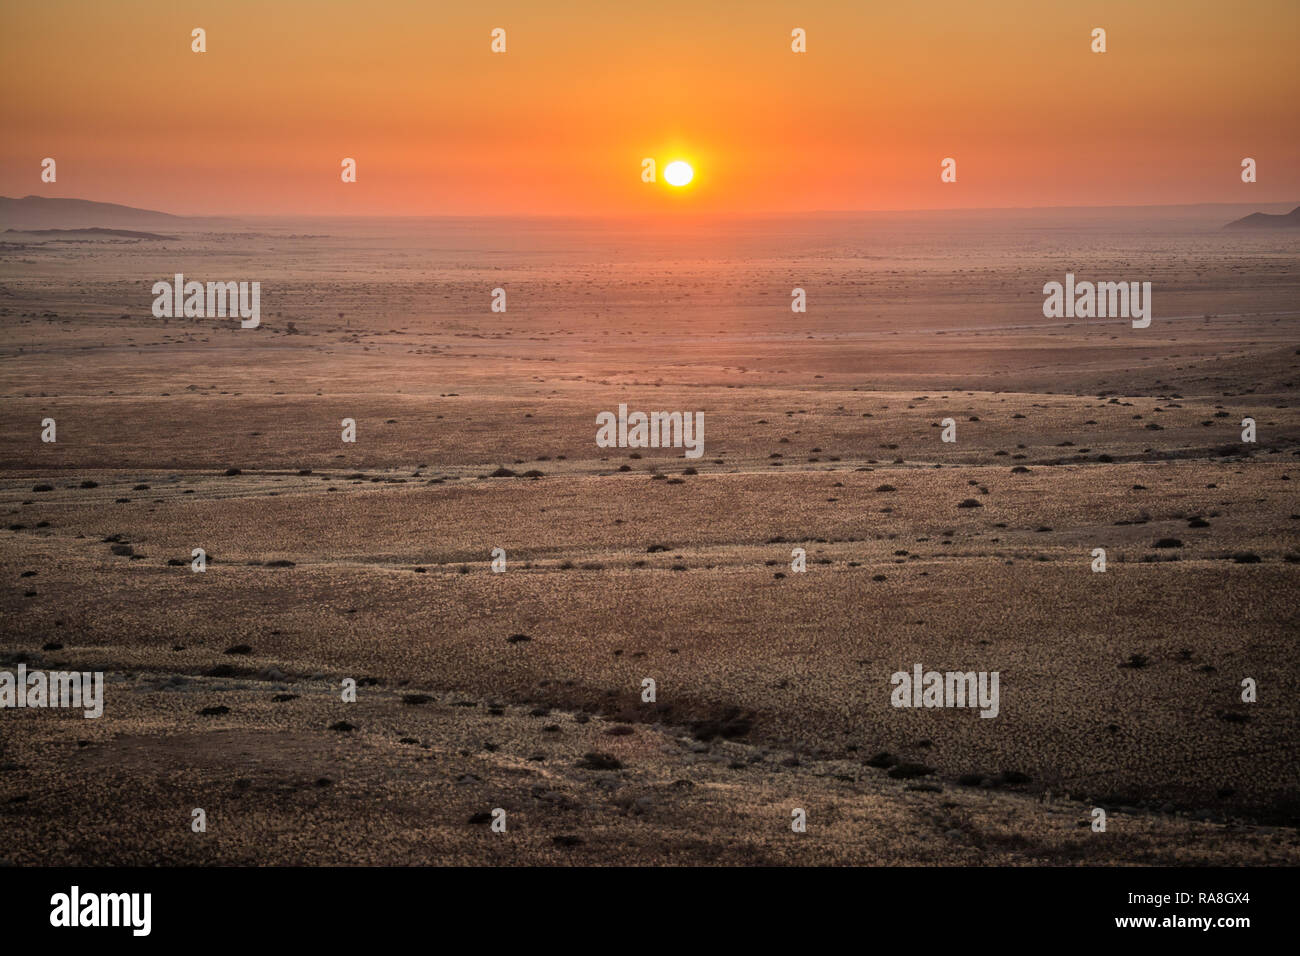 Sunset in the namibien desert Stock Photo